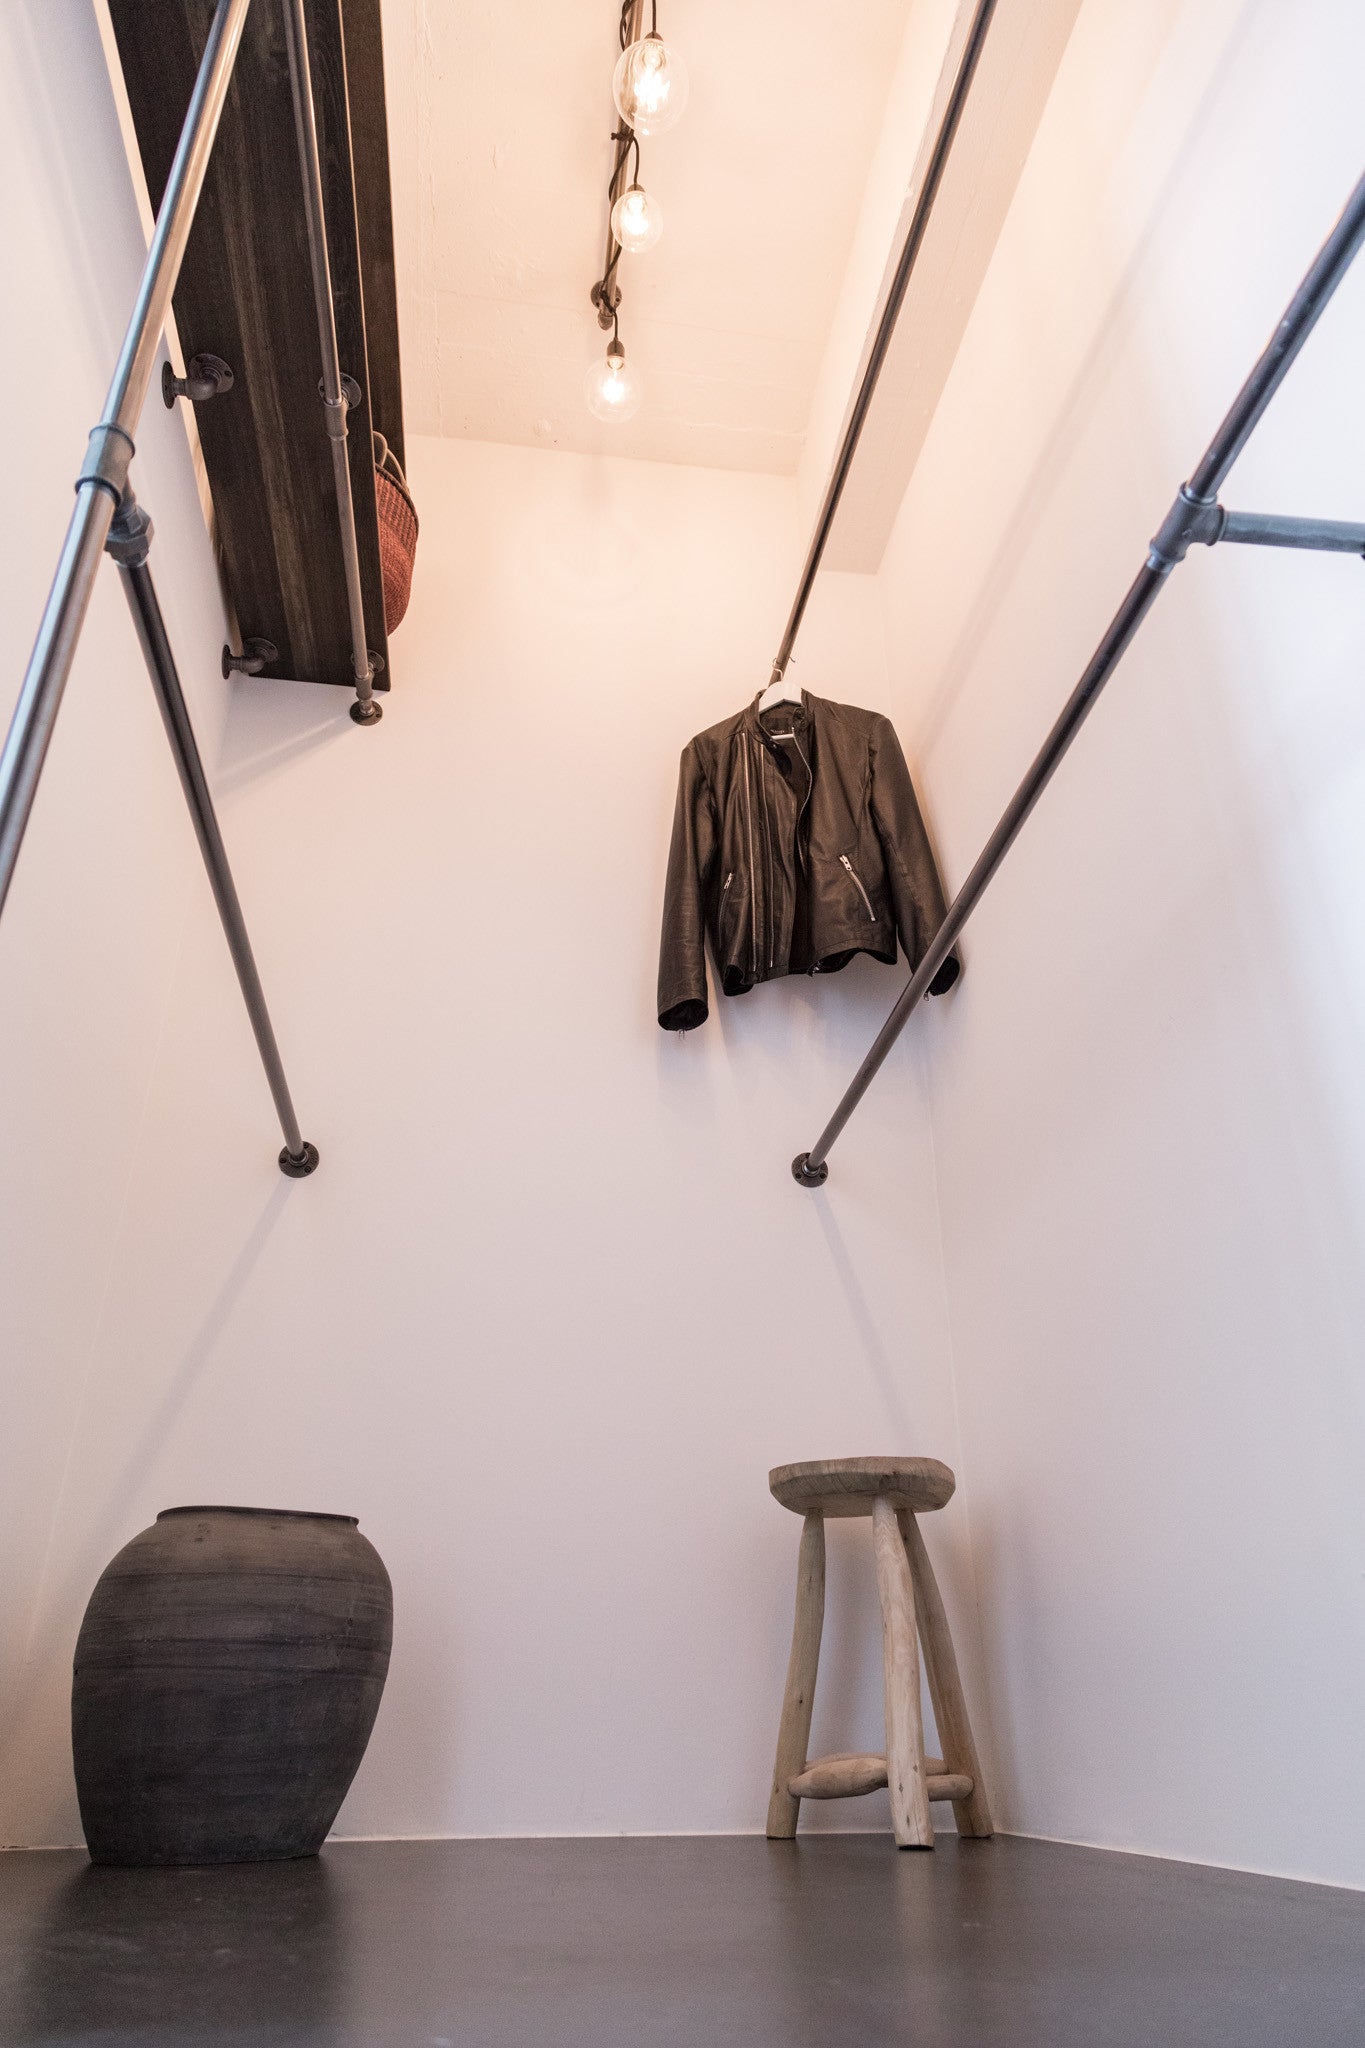 Walk-in closet Lösung in STAY Copenhagen - industrielles Design von RackBuddy